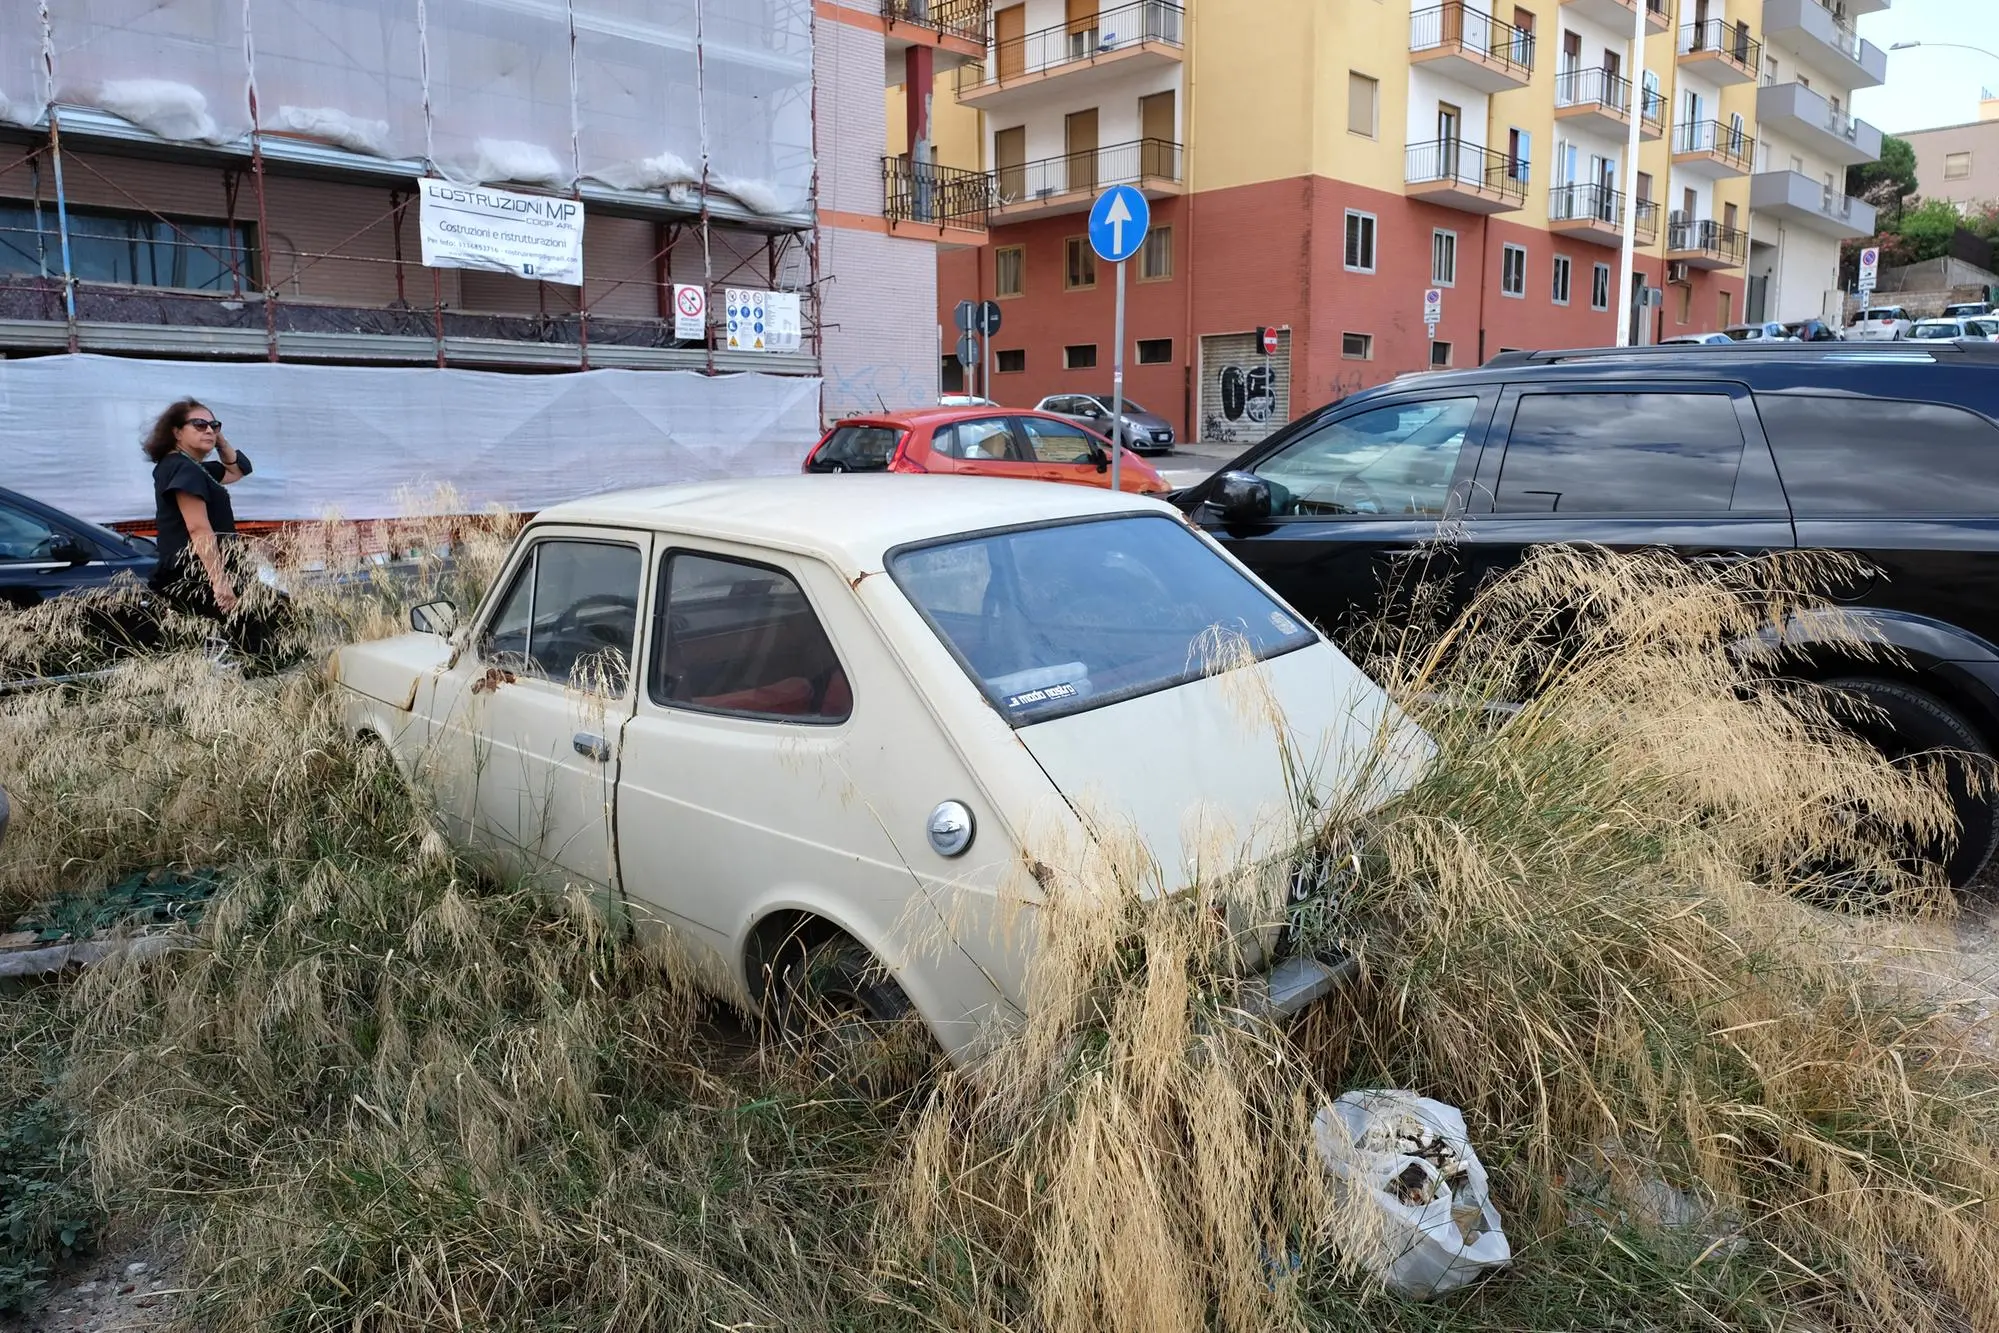 Una delle tante auto abbandonate a cagliari (Giuseppe Ungari)